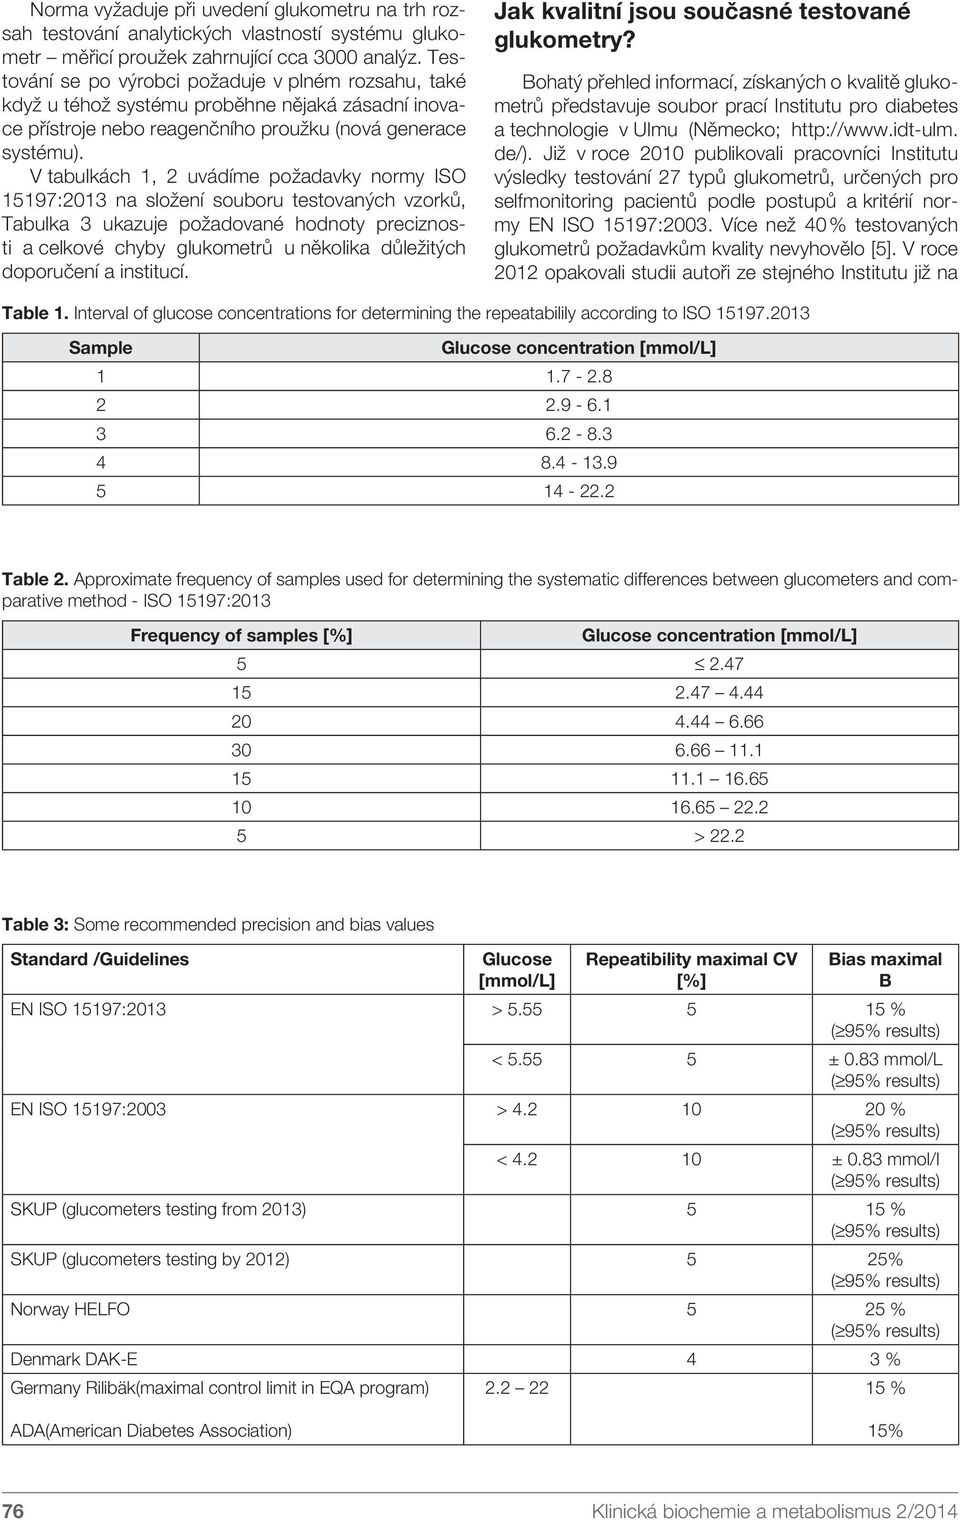 V tabulkách 1, 2 uvádíme požadavky normy ISO 15197:2013 na složení souboru testovaných vzorků, Tabulka 3 ukazuje požadované hodnoty preciznosti a celkové chyby glukometrů u několika důležitých